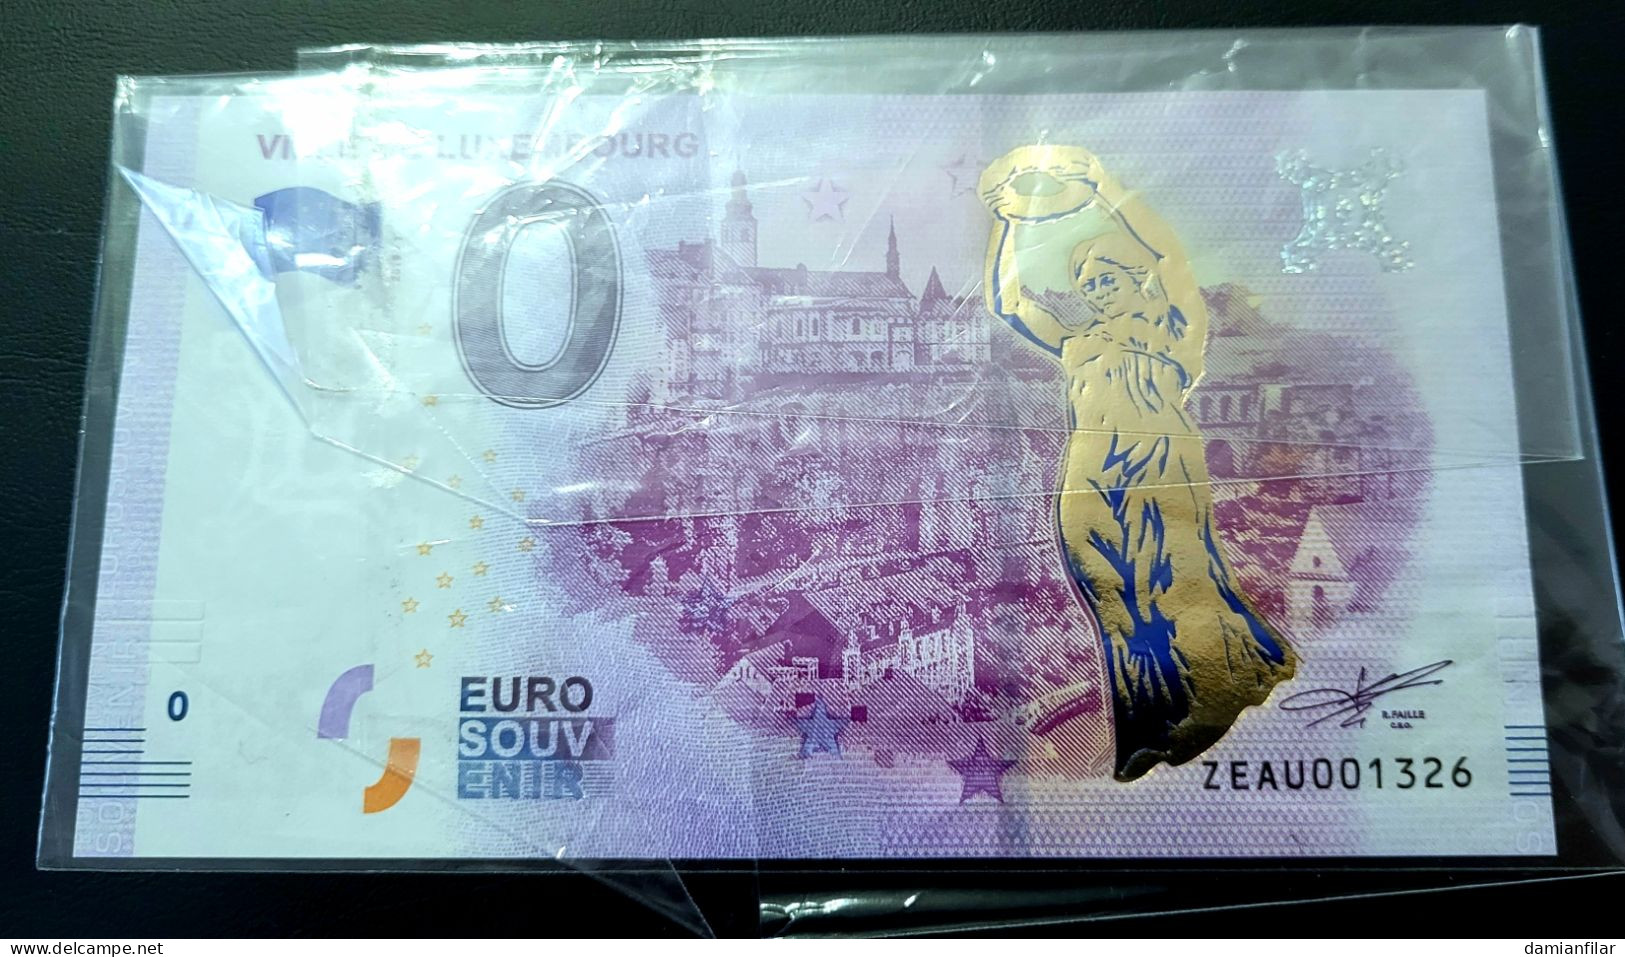 0 Euro Souvenir Ville De Luxembourg ZEAU 2019-1 Gold - Luxembourg